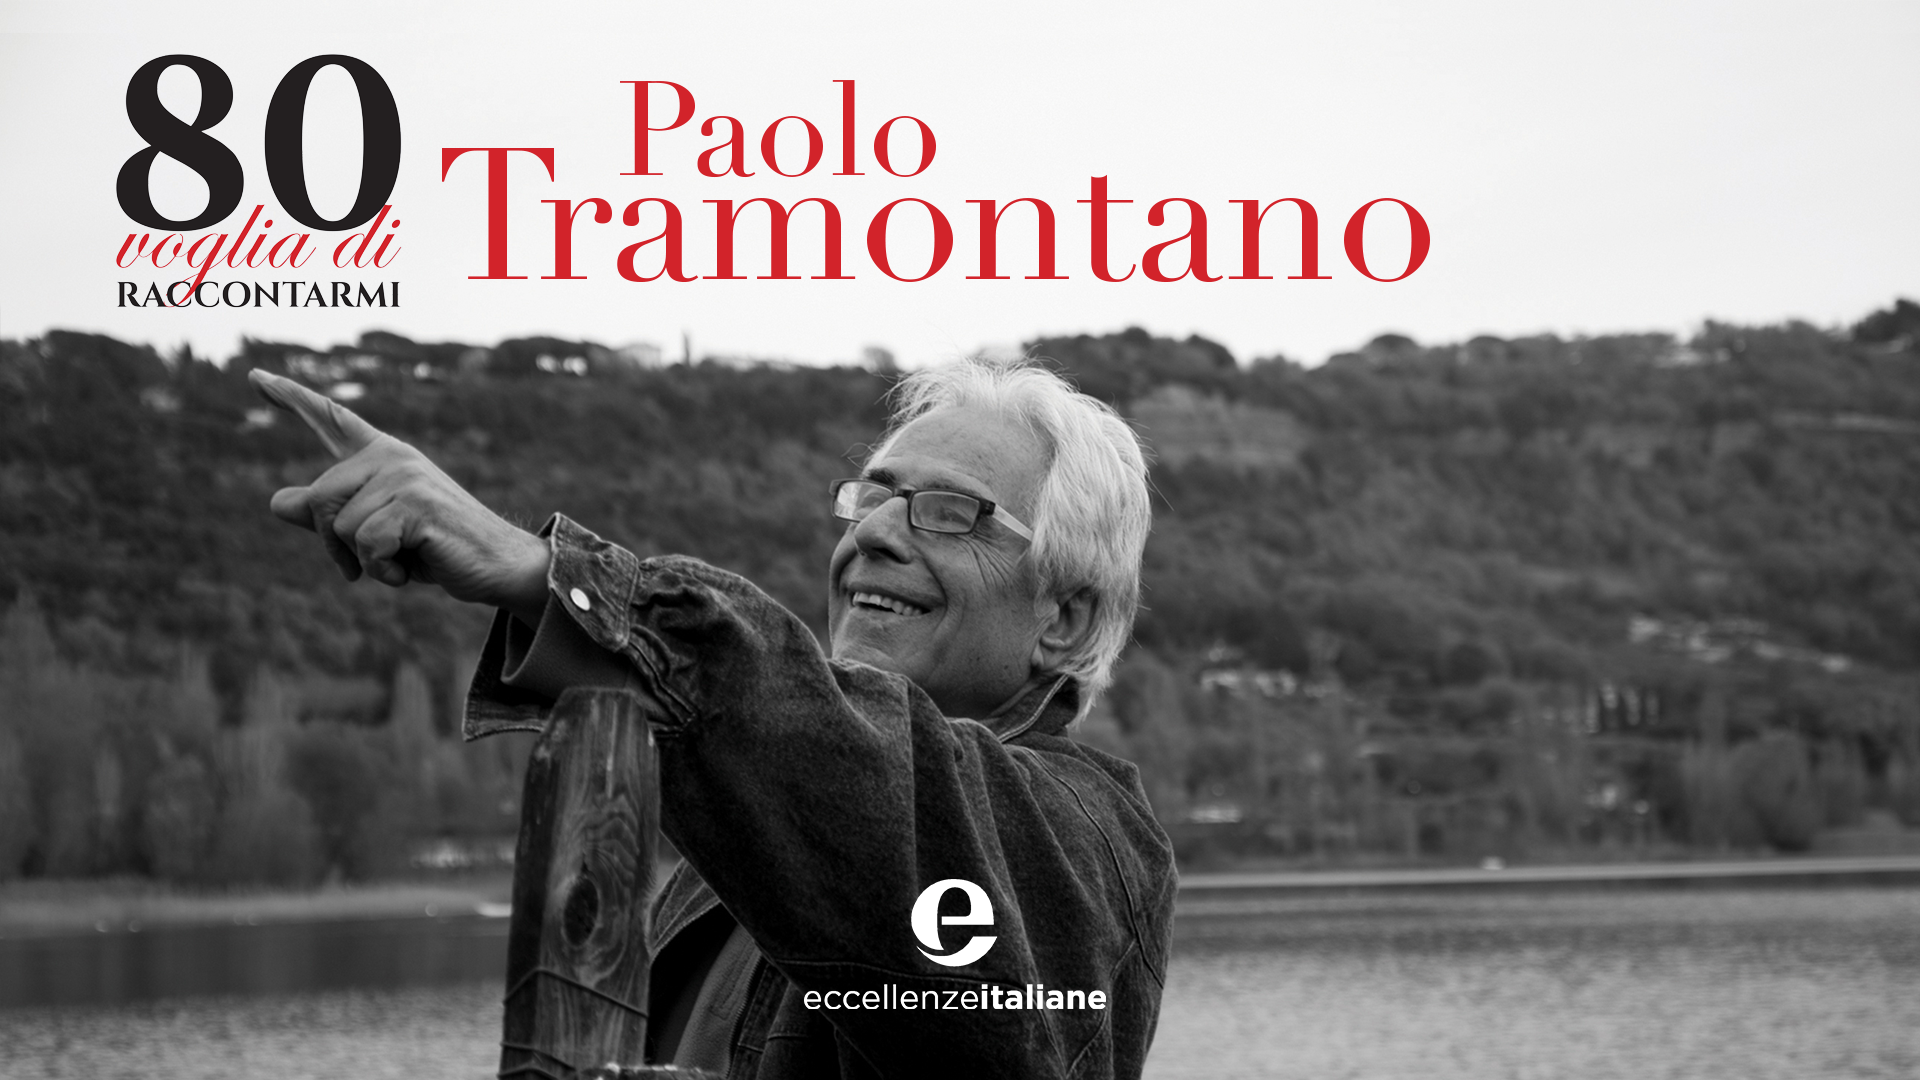 Una monografia e un compleanno speciale per Paolo Tramontano, fondatore di Harmony Group